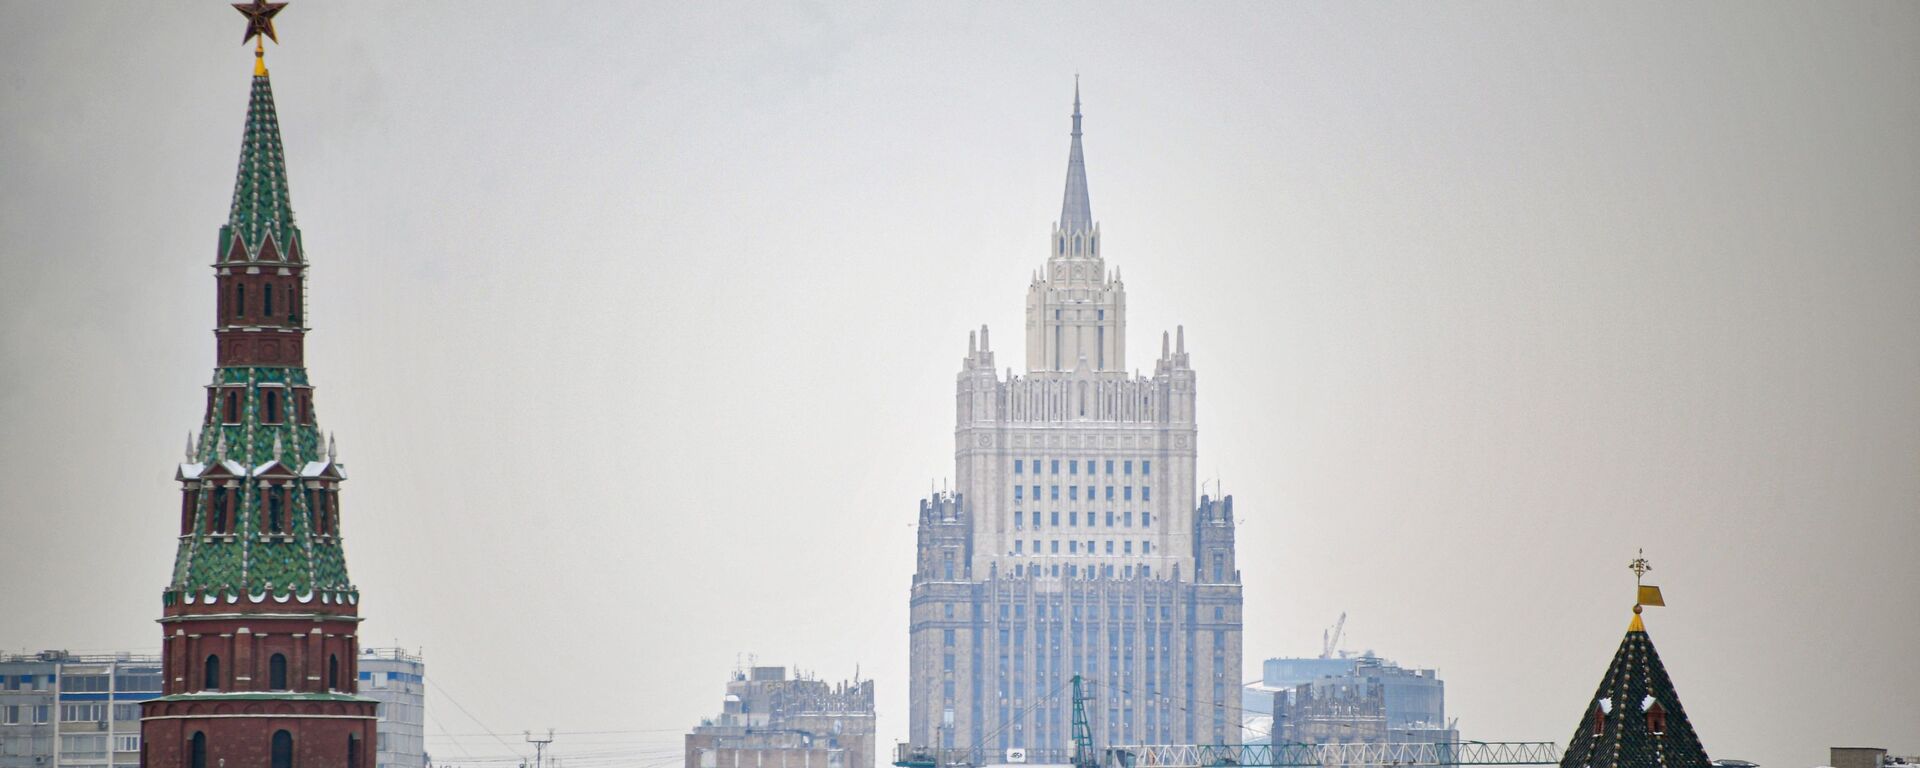 Москва, Кремљ, зграда Министарства спољних послова Русије - Sputnik Србија, 1920, 02.03.2021